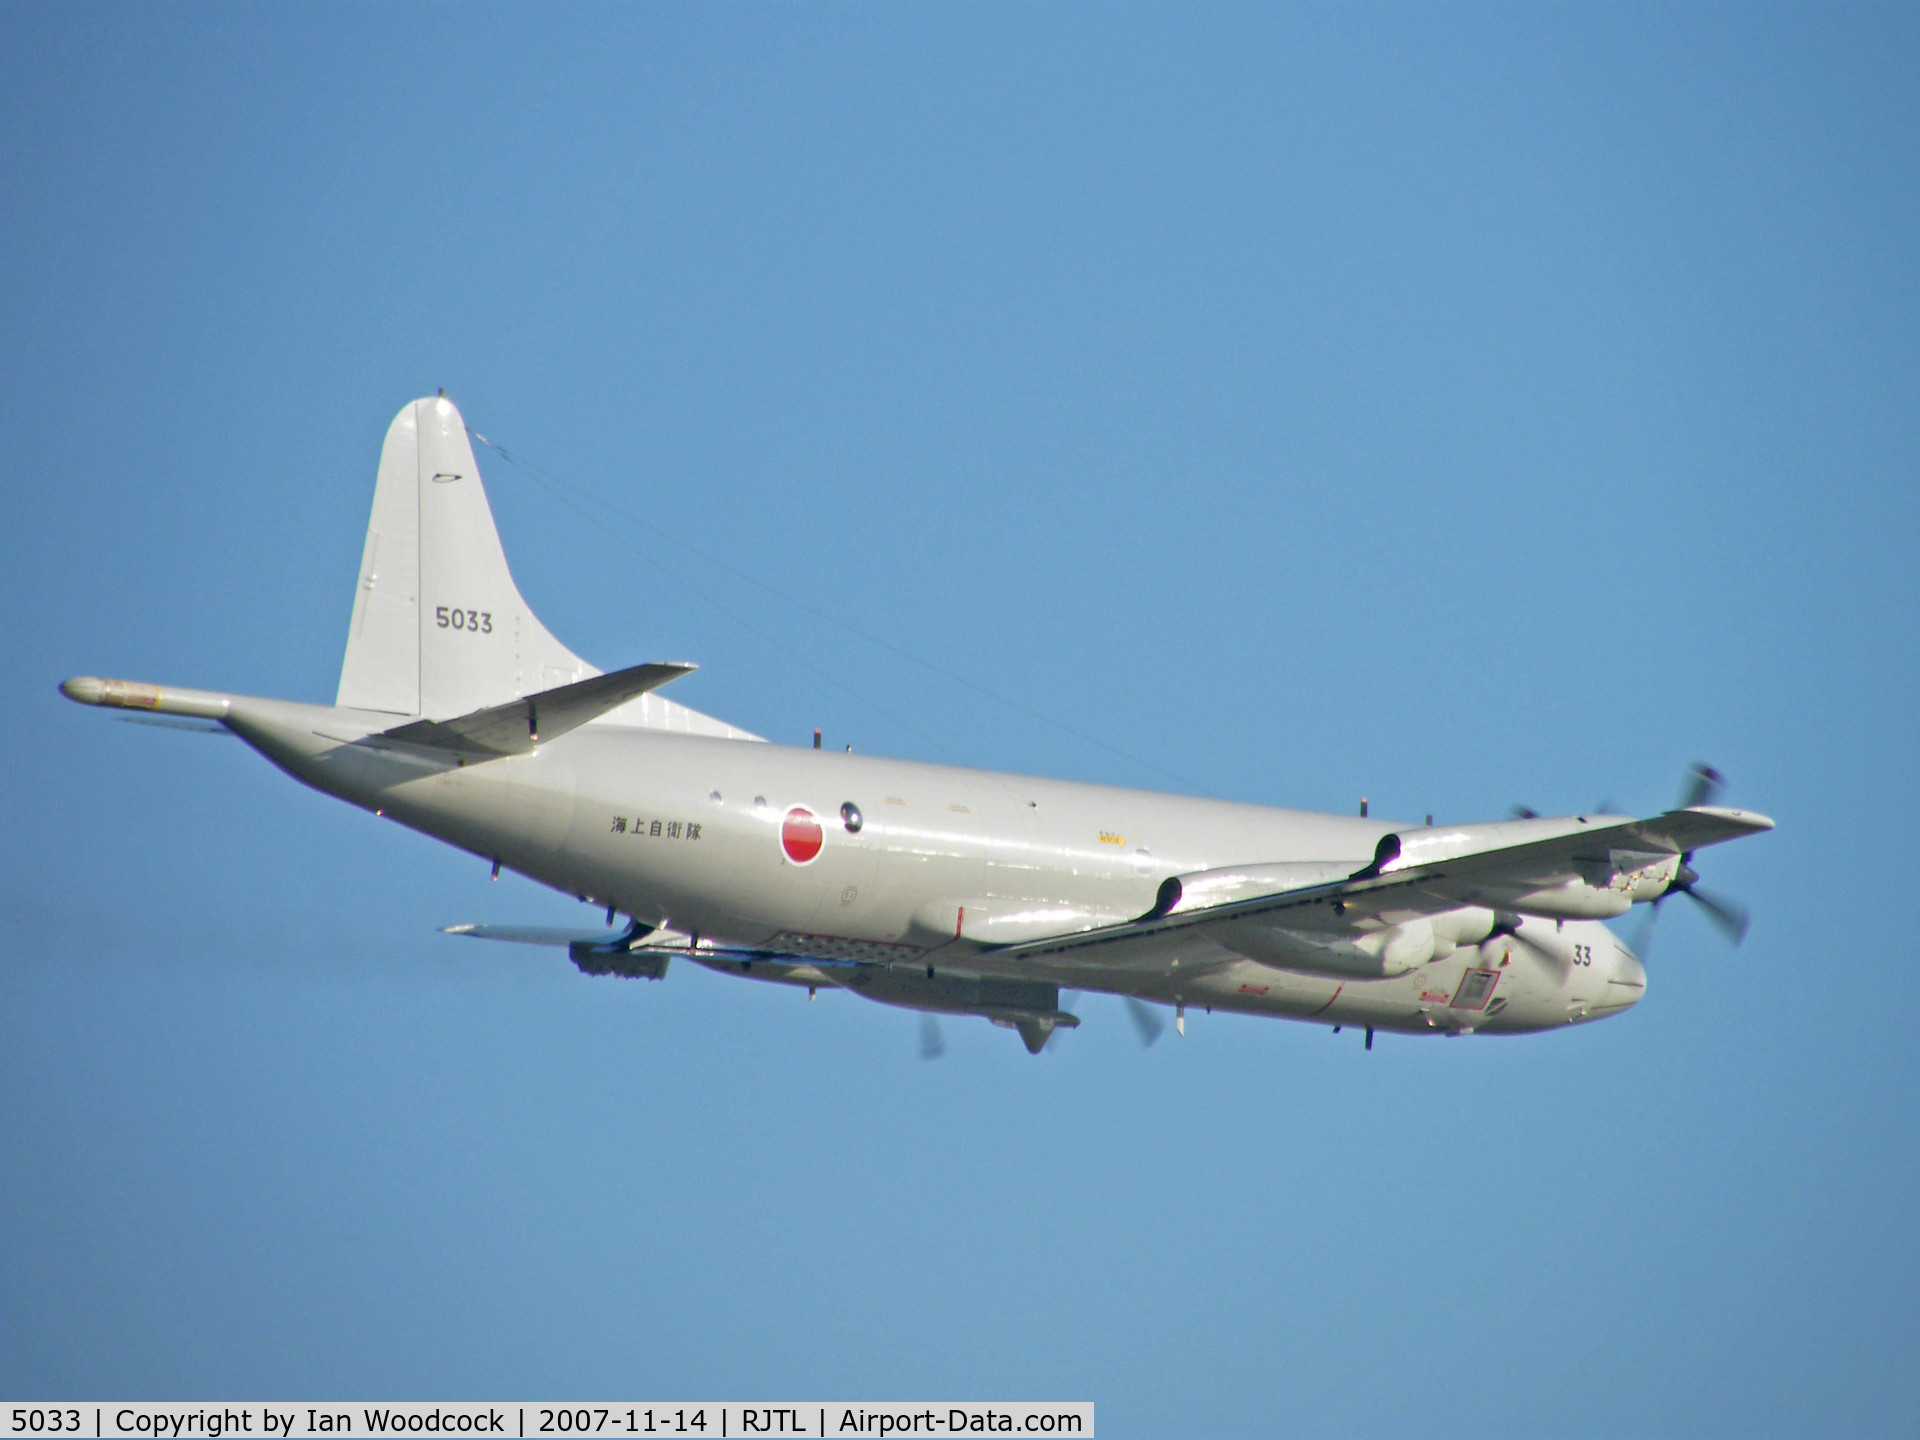 5033, Lockheed P-3C Orion C/N 9030, P-3C/Shimofusa